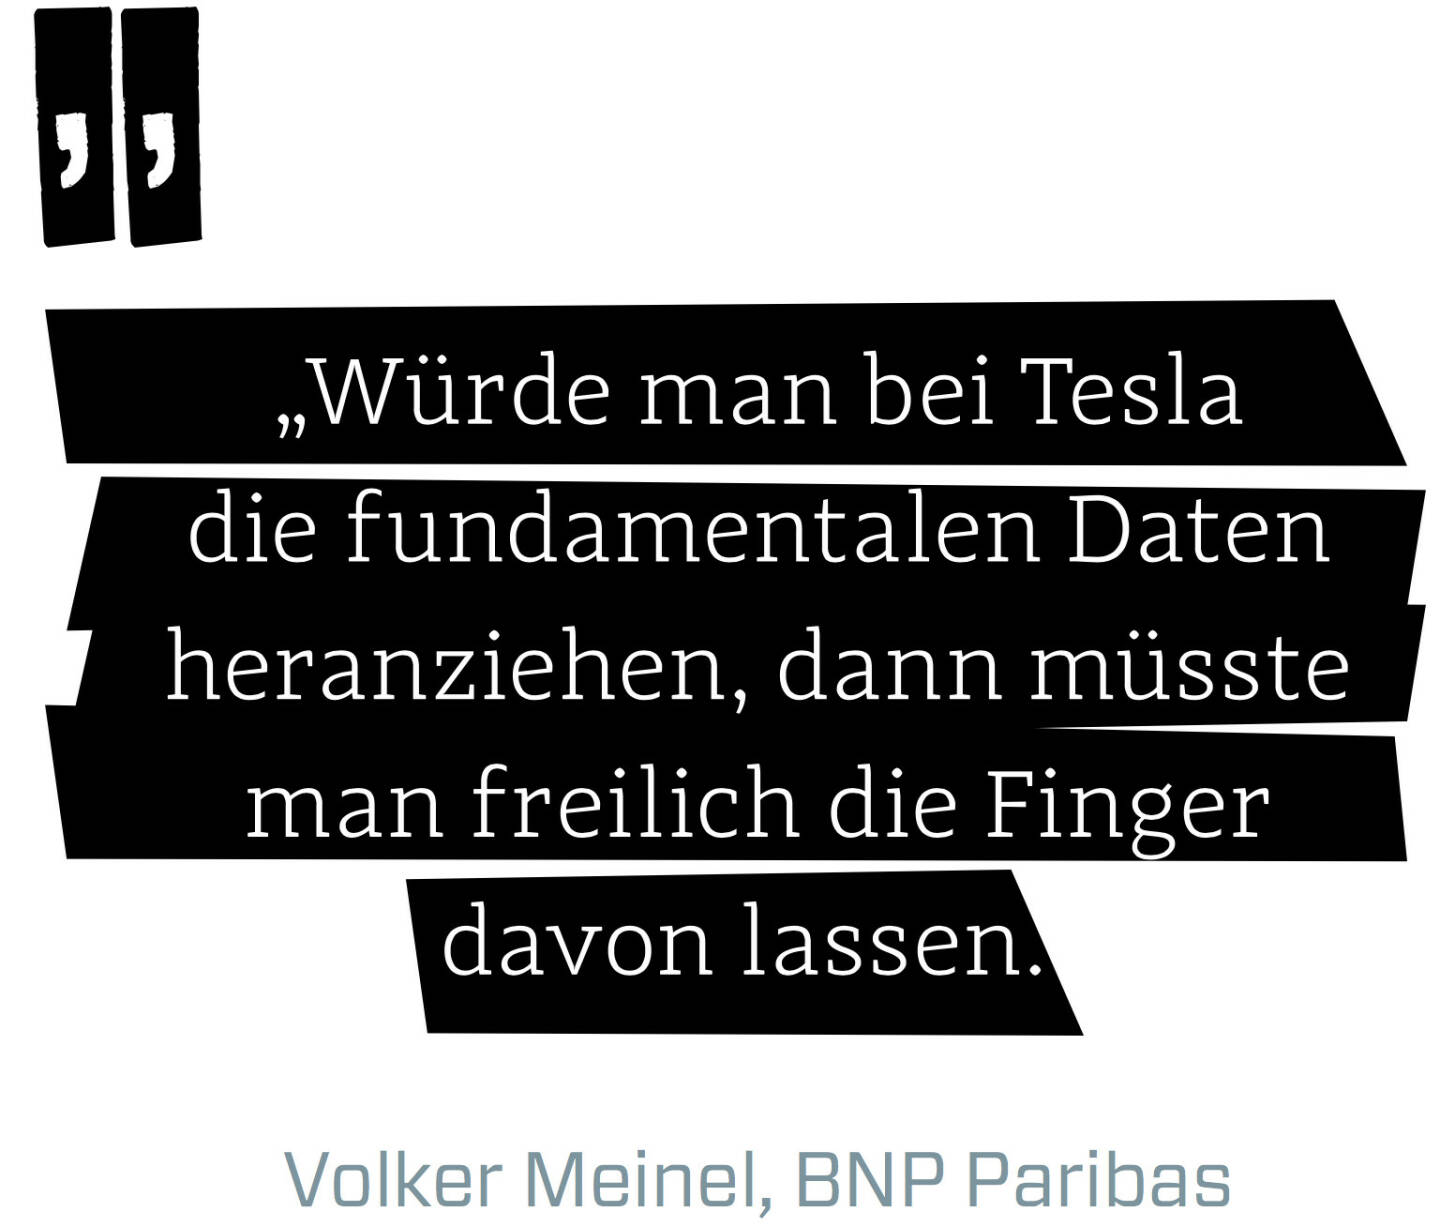 Würde man bei Tesla die fundamentalen Daten heranziehen, dann müsste man freilich die Finger davon lassen. (Volker Meinel, BNP Paribas)